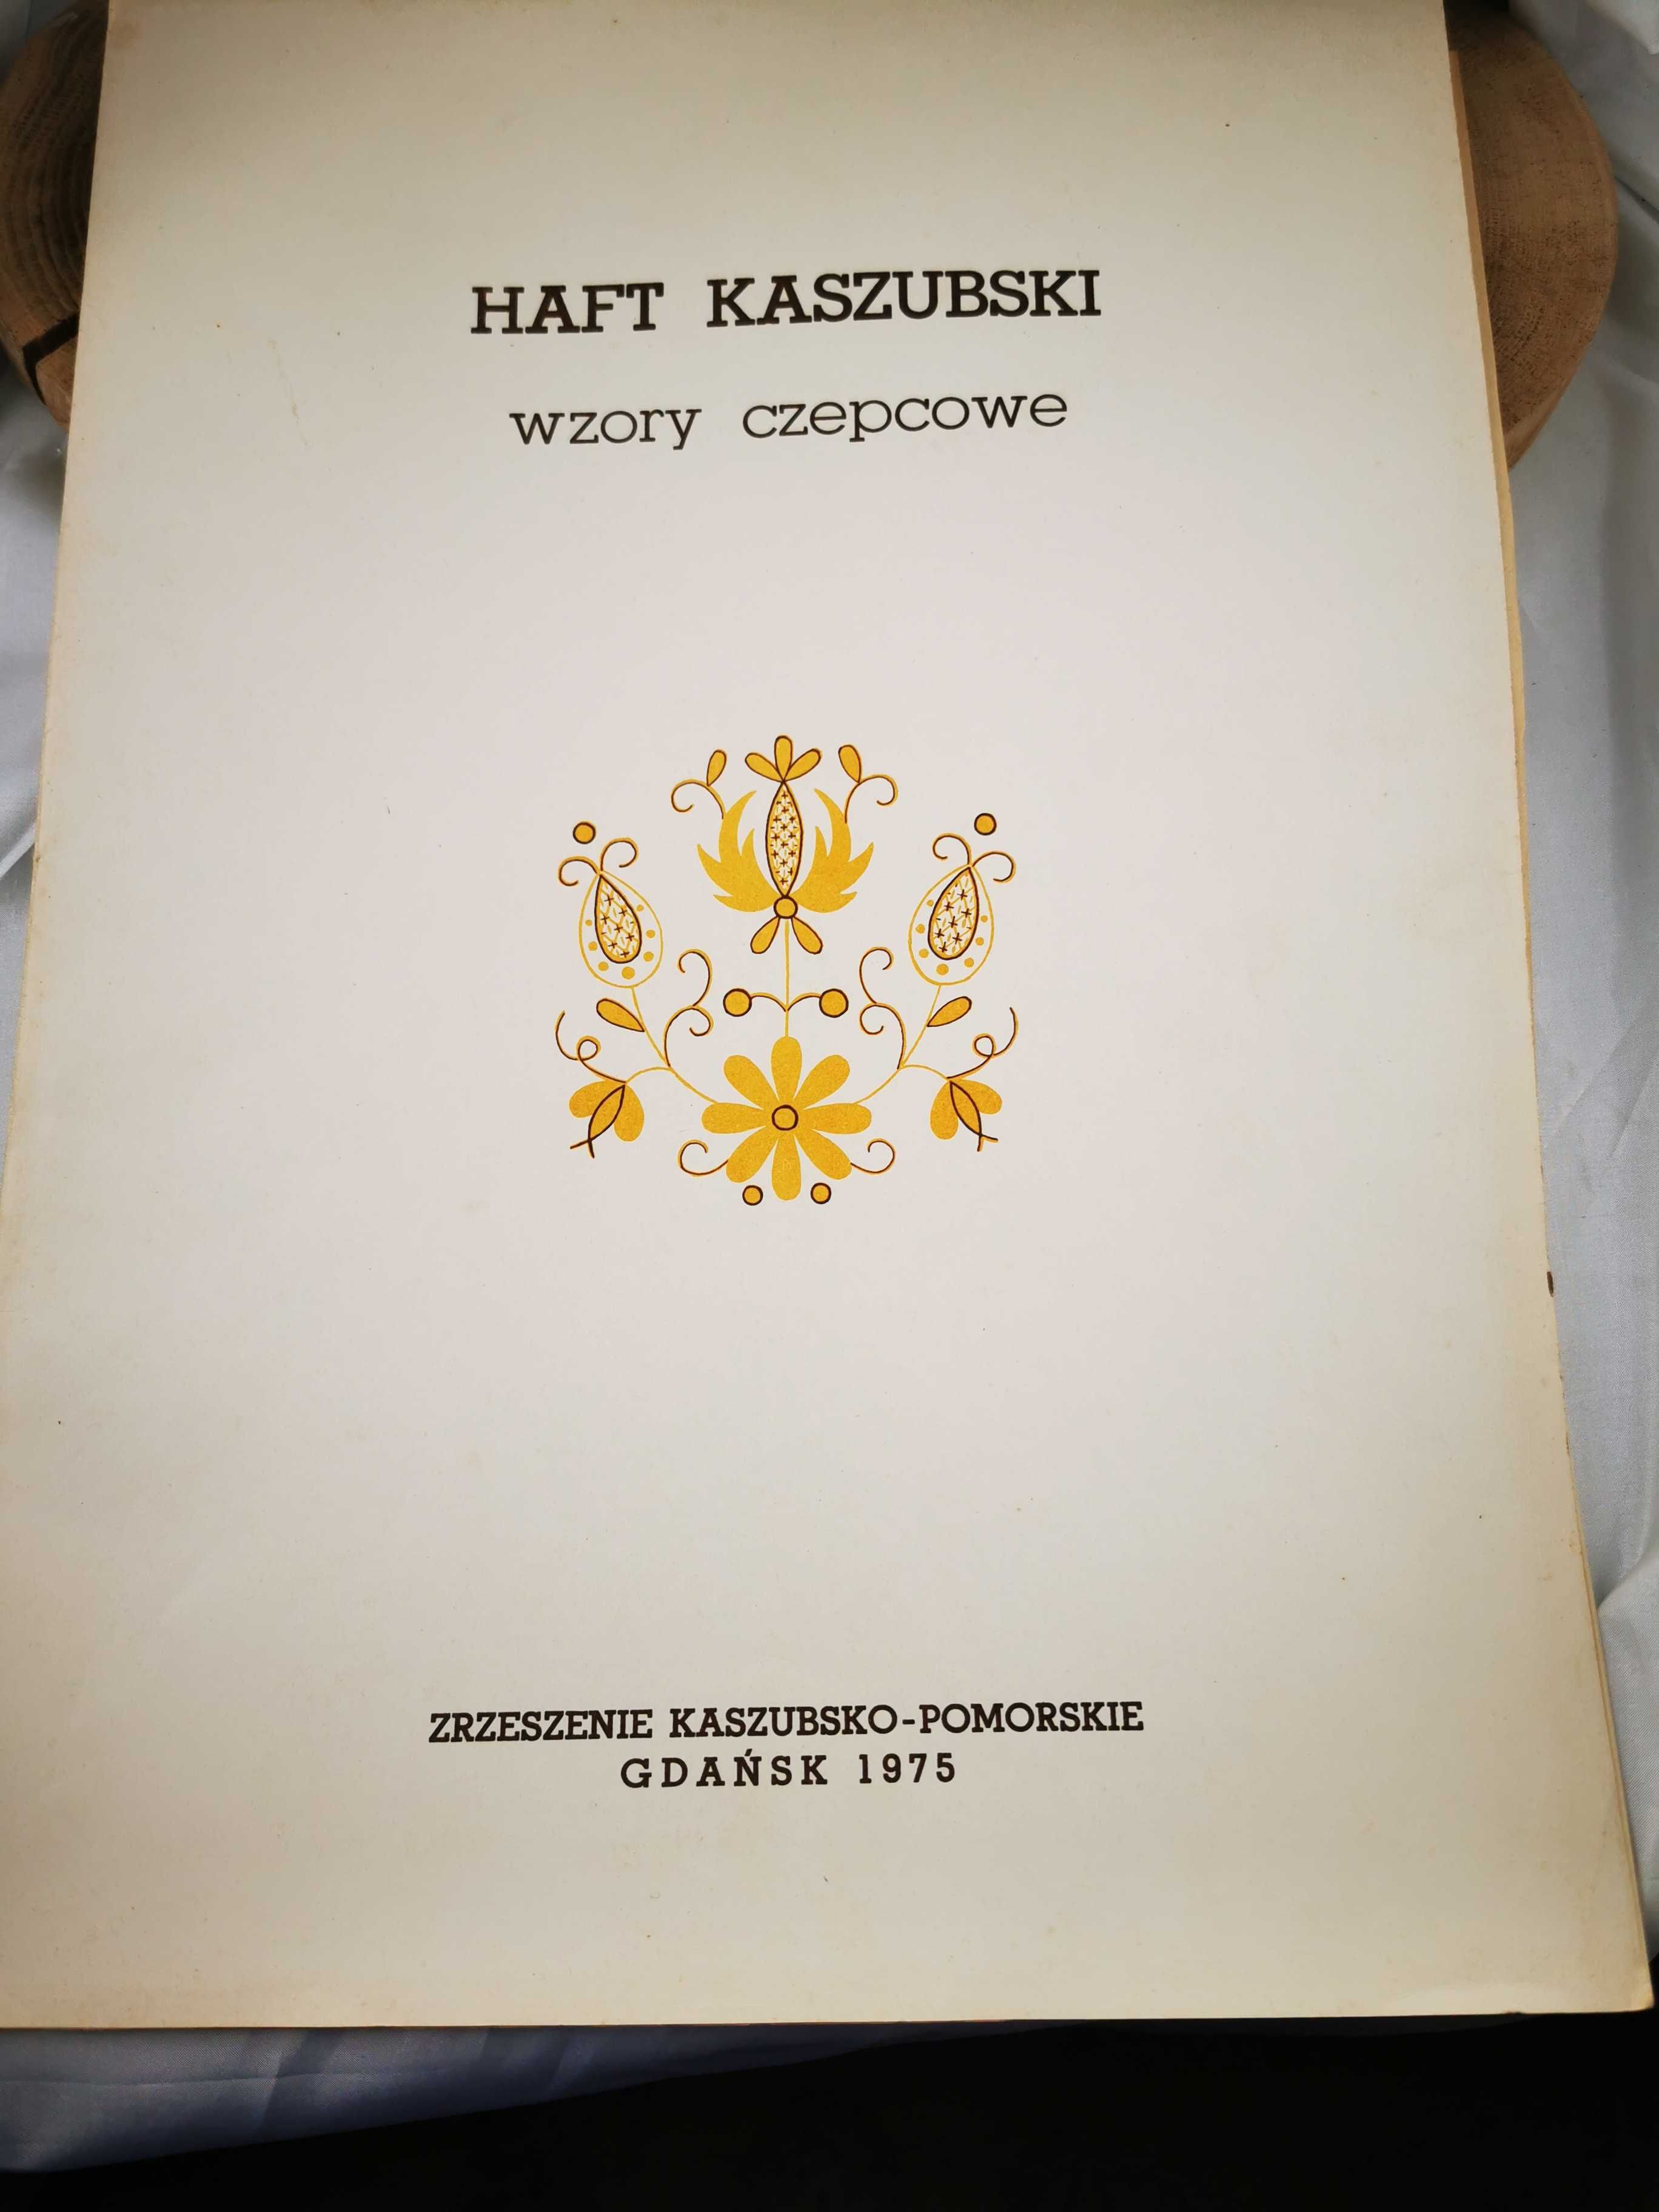 Haft Kaszubski wzory czepcowe